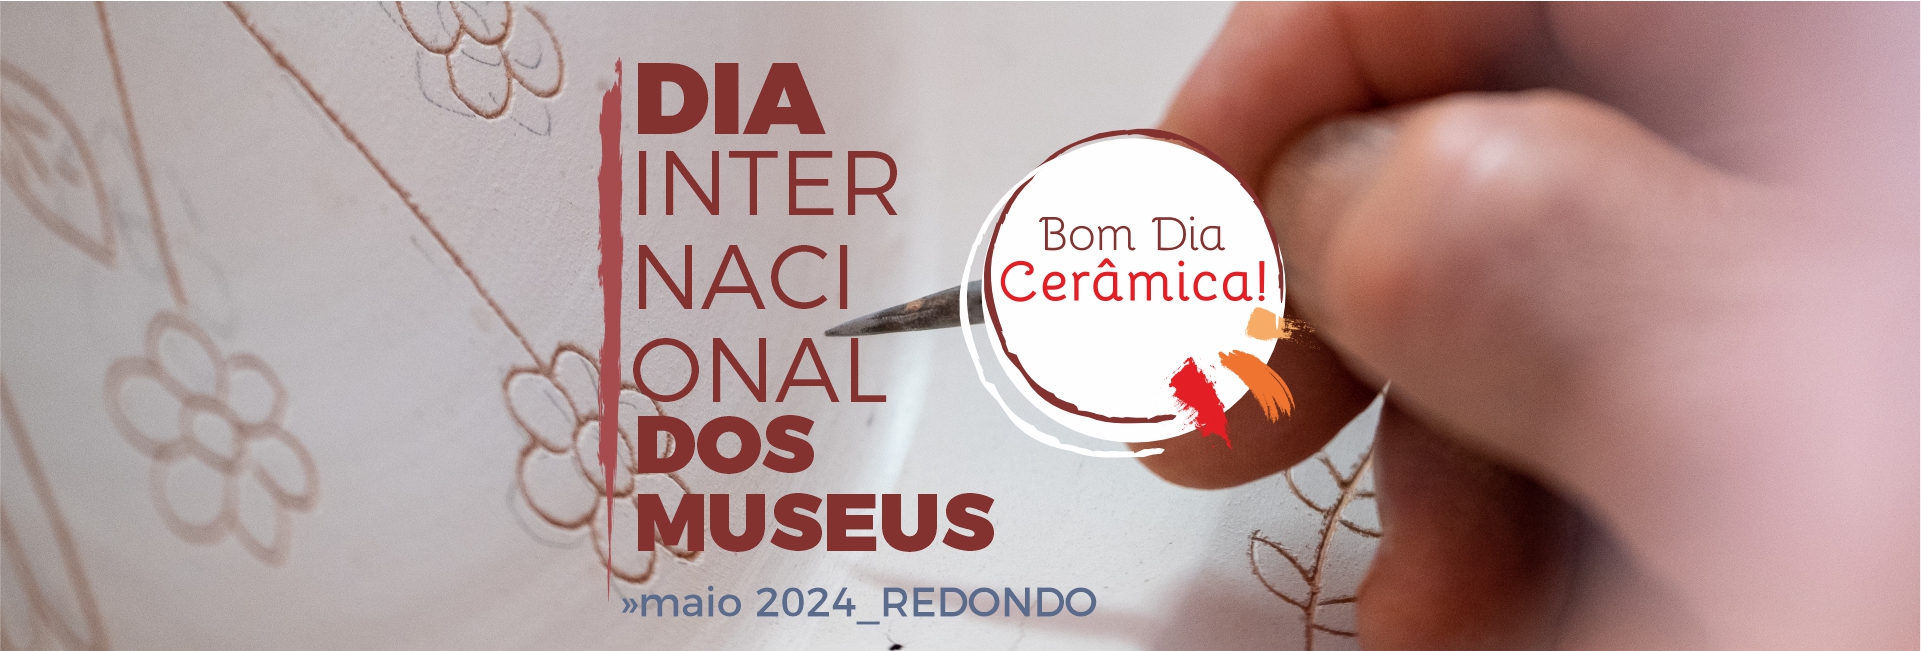 Dia Internacional dos Museus | Bom Dia Cerâmica! | 18 e 19 de maio | Redondo